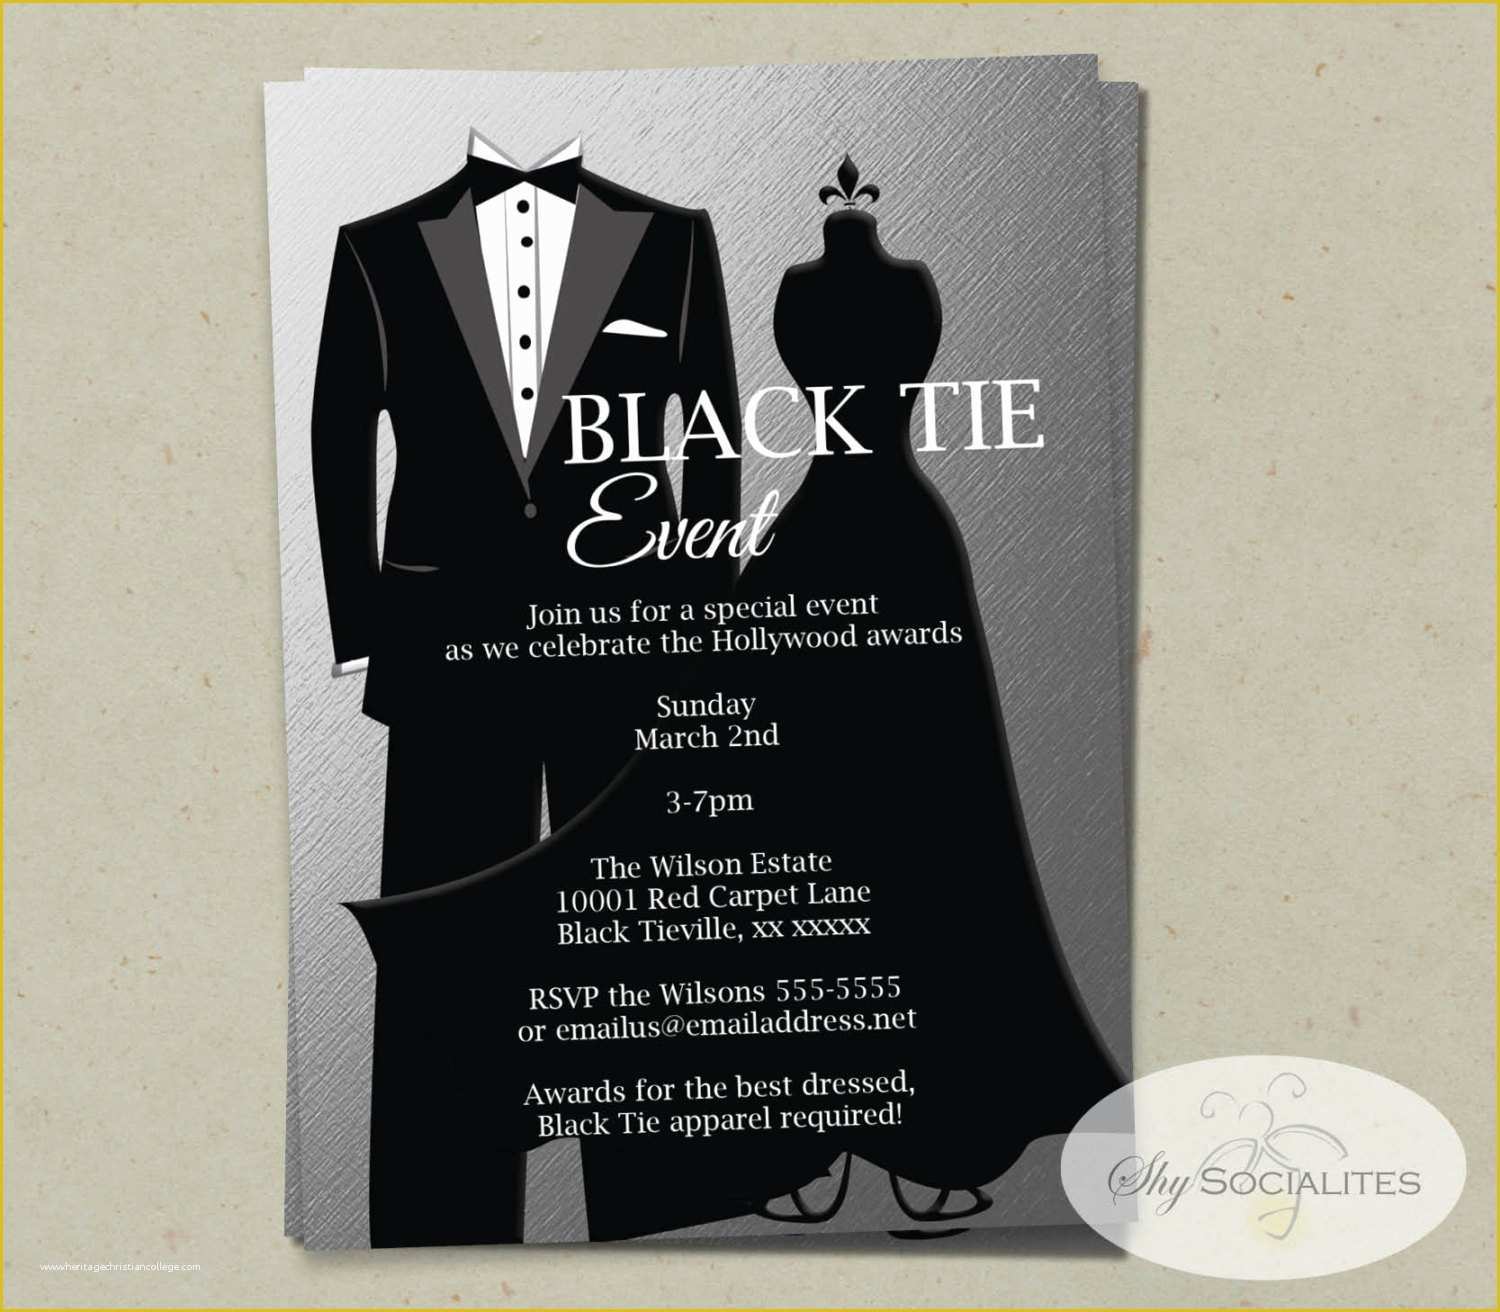 Black Tie event Invitation Free Template Of Silver Black Tie Invitation